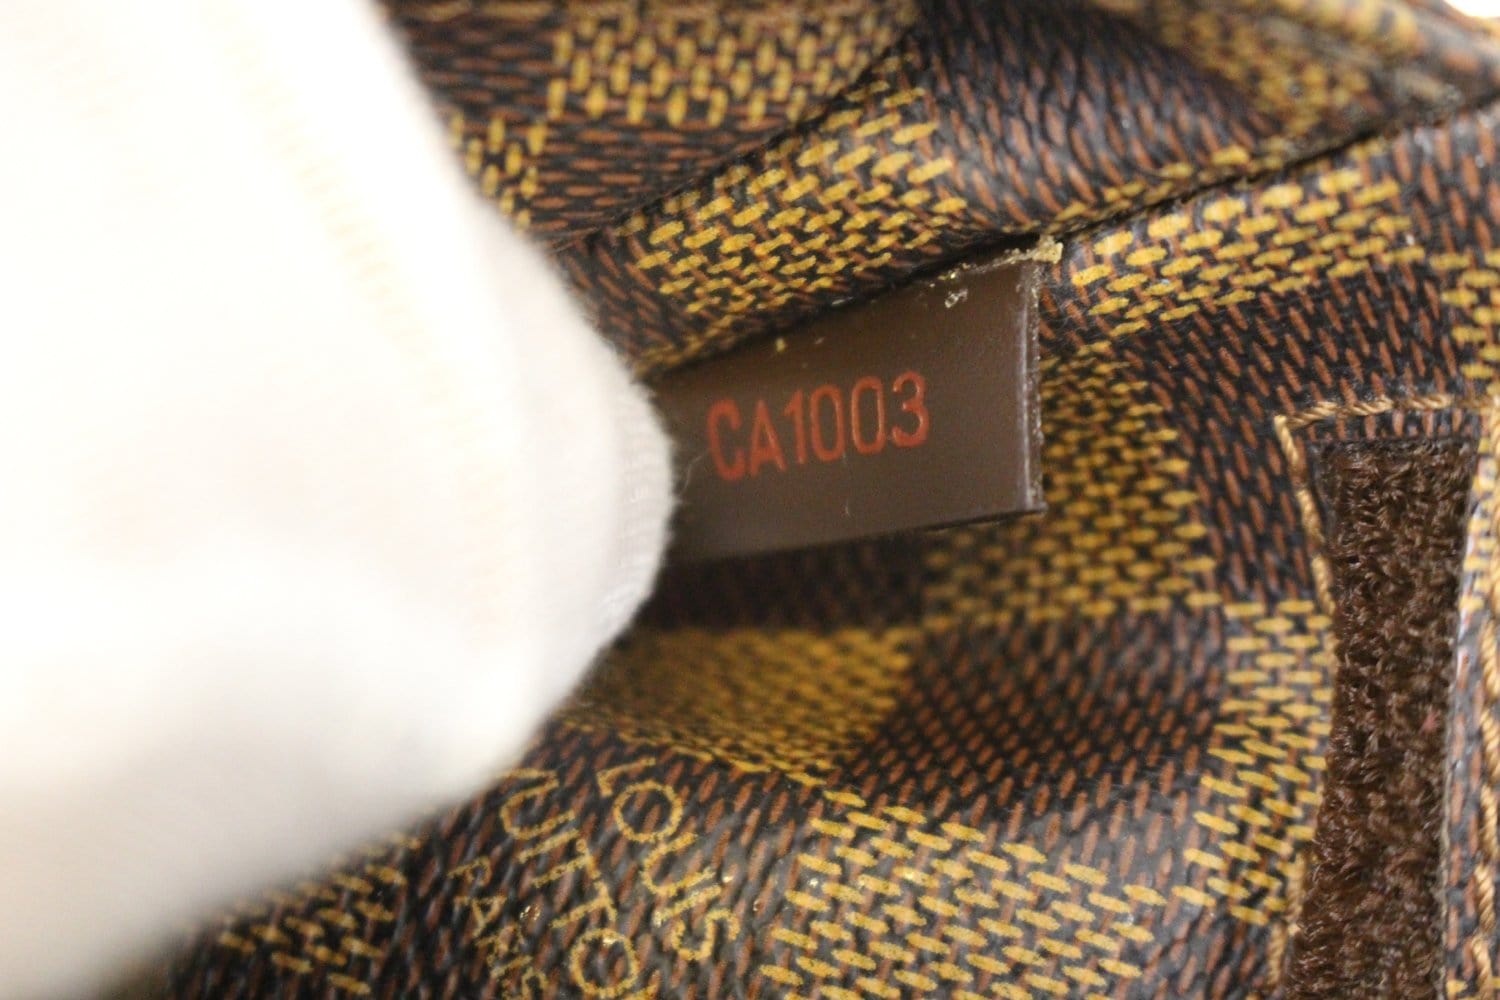 Geronimo fabric handbag Louis Vuitton Brown in Cloth - 33758579